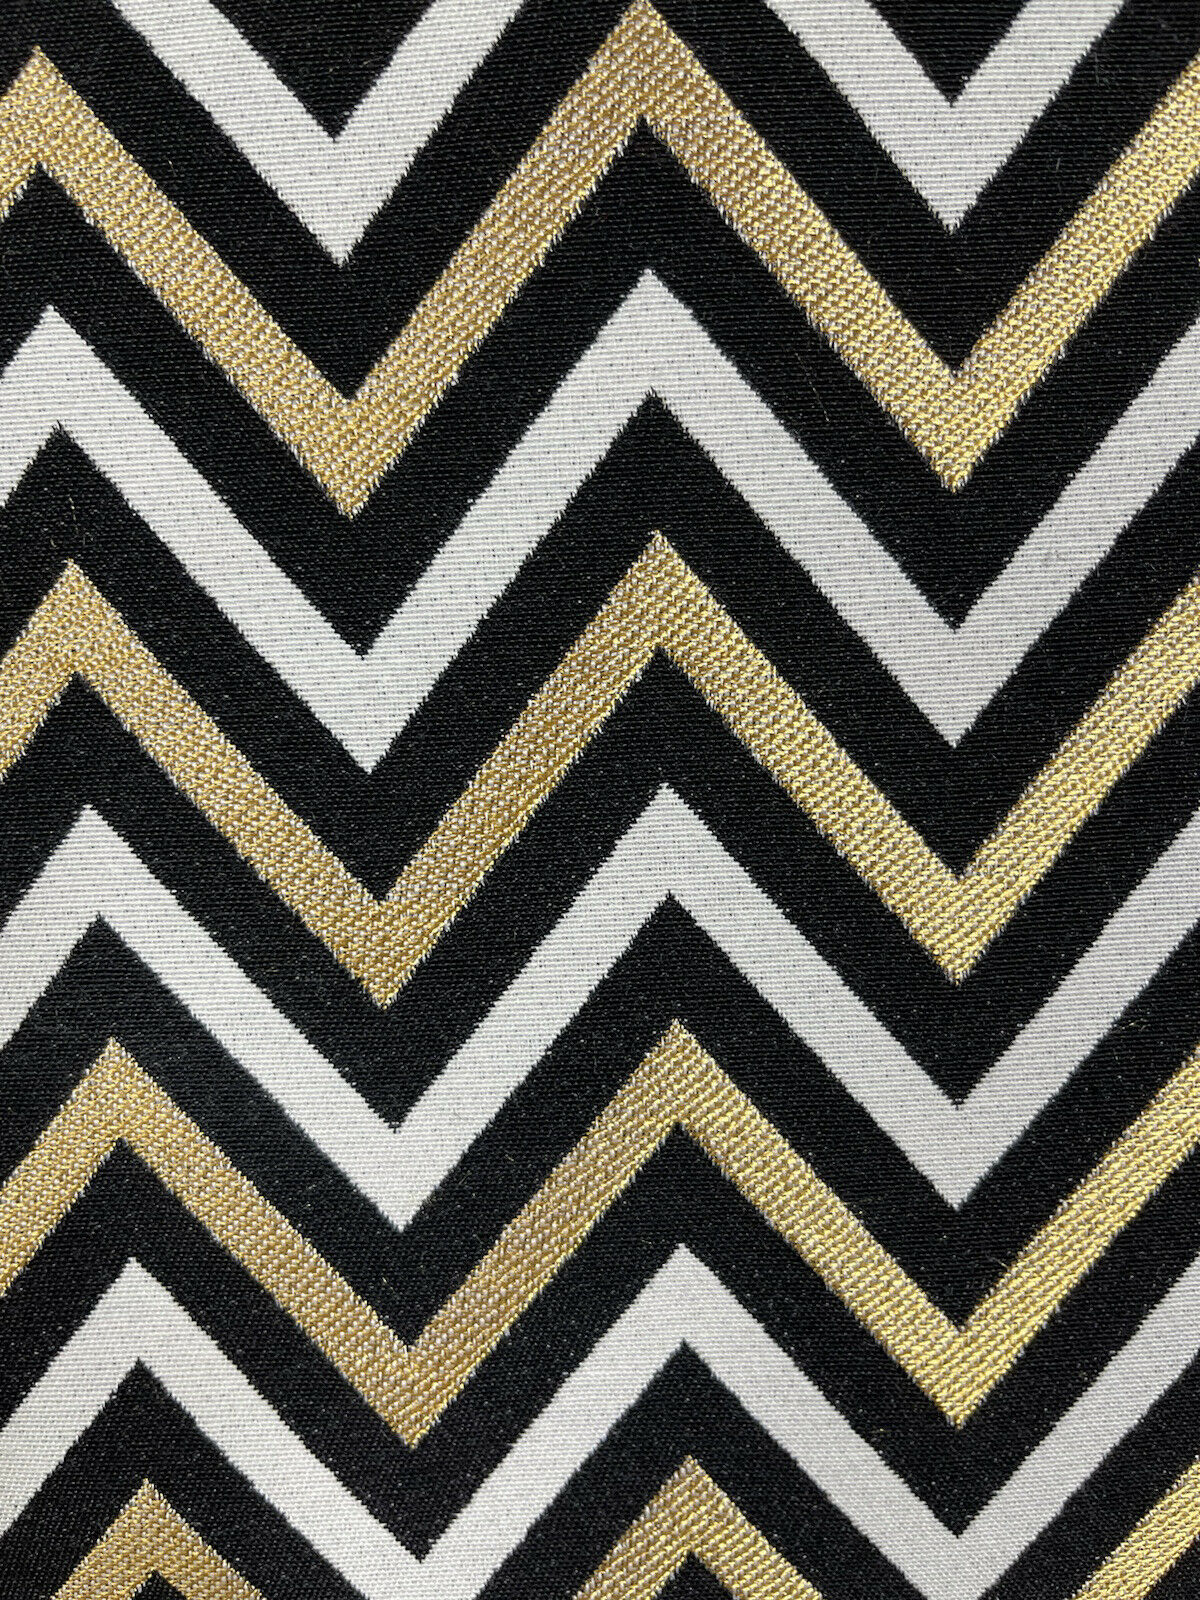 Zig Zag Chevron Fabric: Gold, Black & White Meter-By-Meter Magic